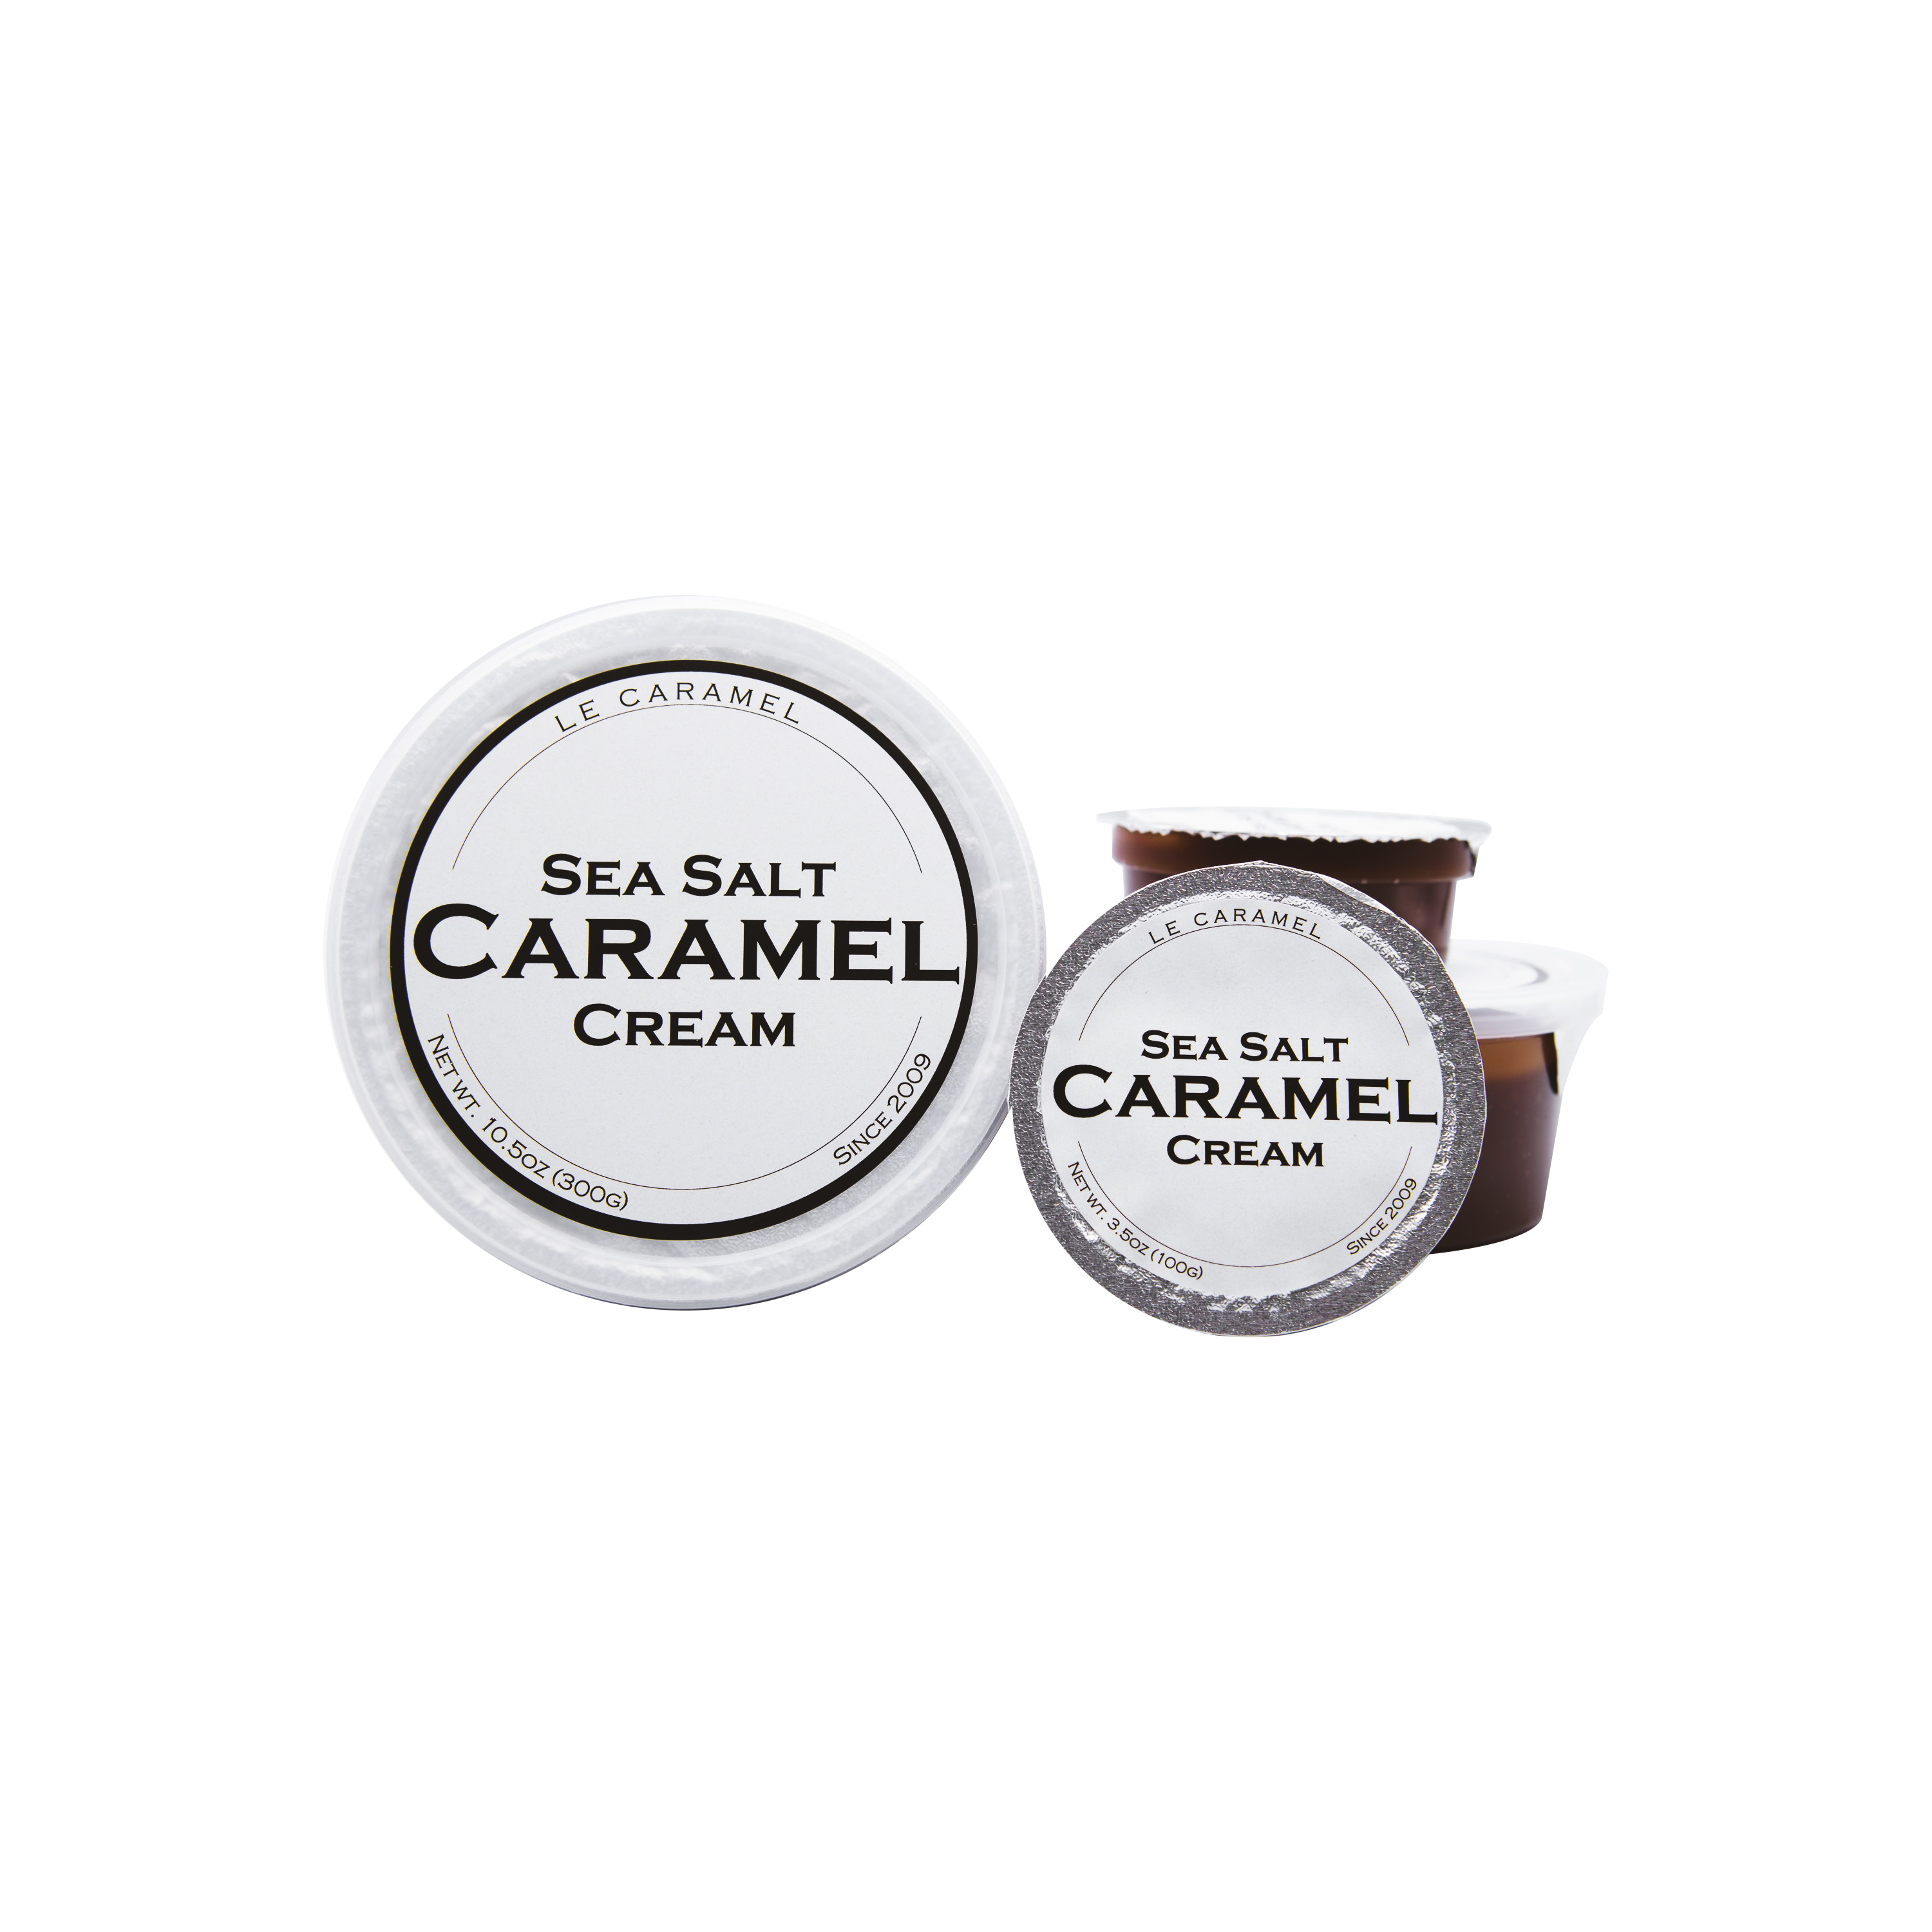 Sea Salt Caramel Cream (Cup)